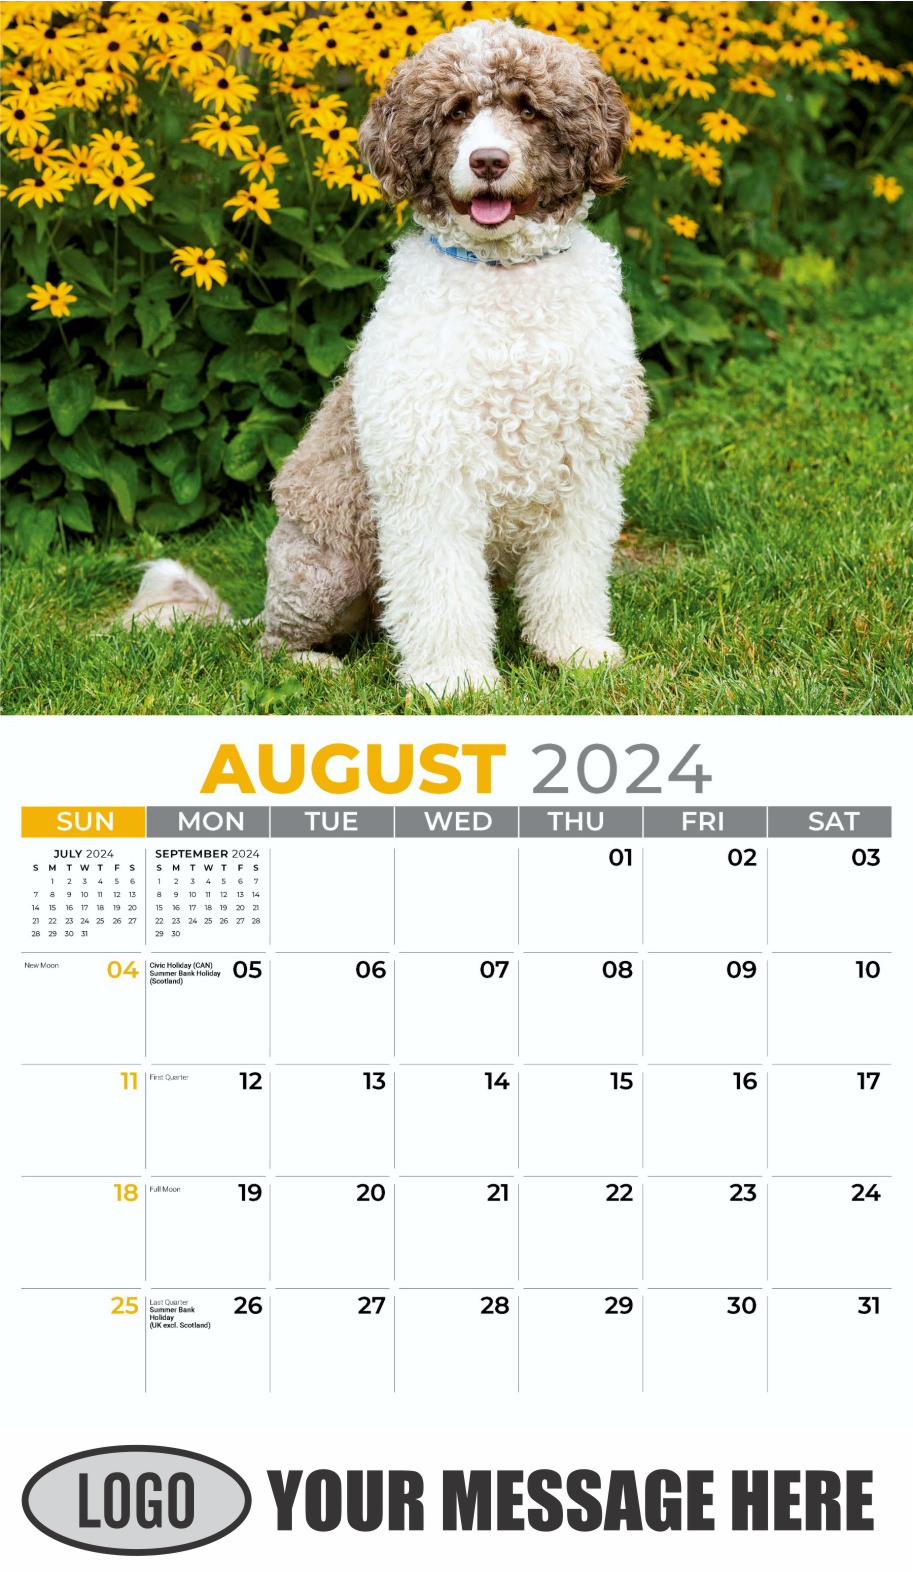 Pets 2024 Business Advertising Wall Calendar - August